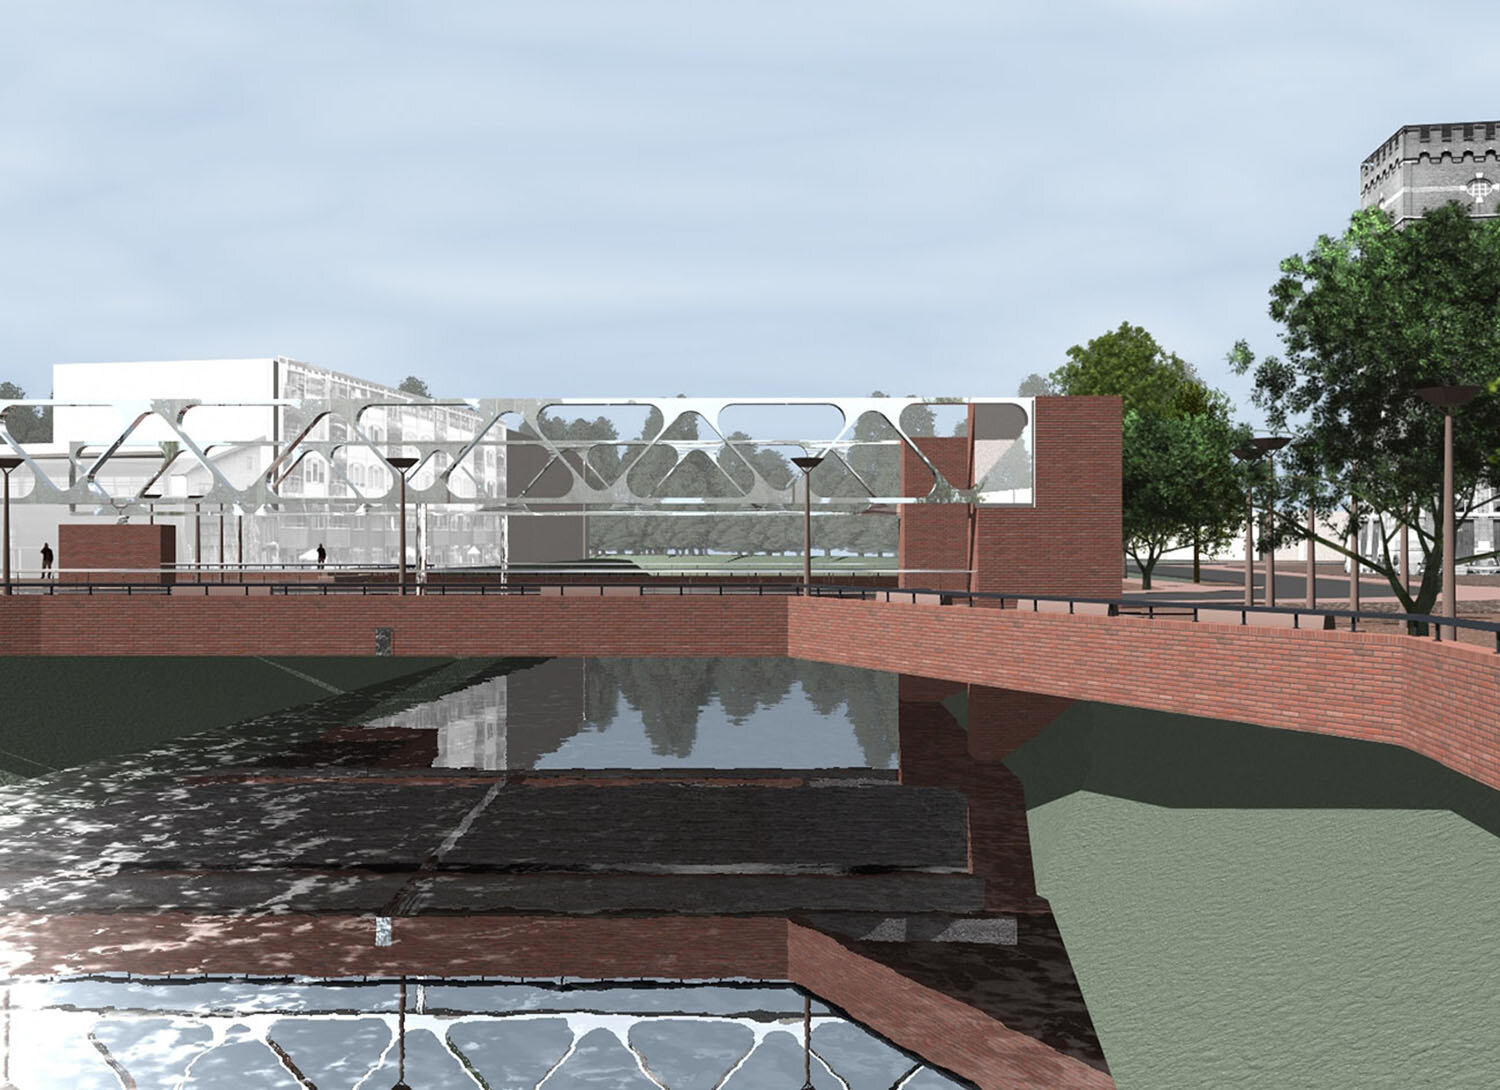 1540, de nieuwe bartenbrug, rendering06, website.jpg